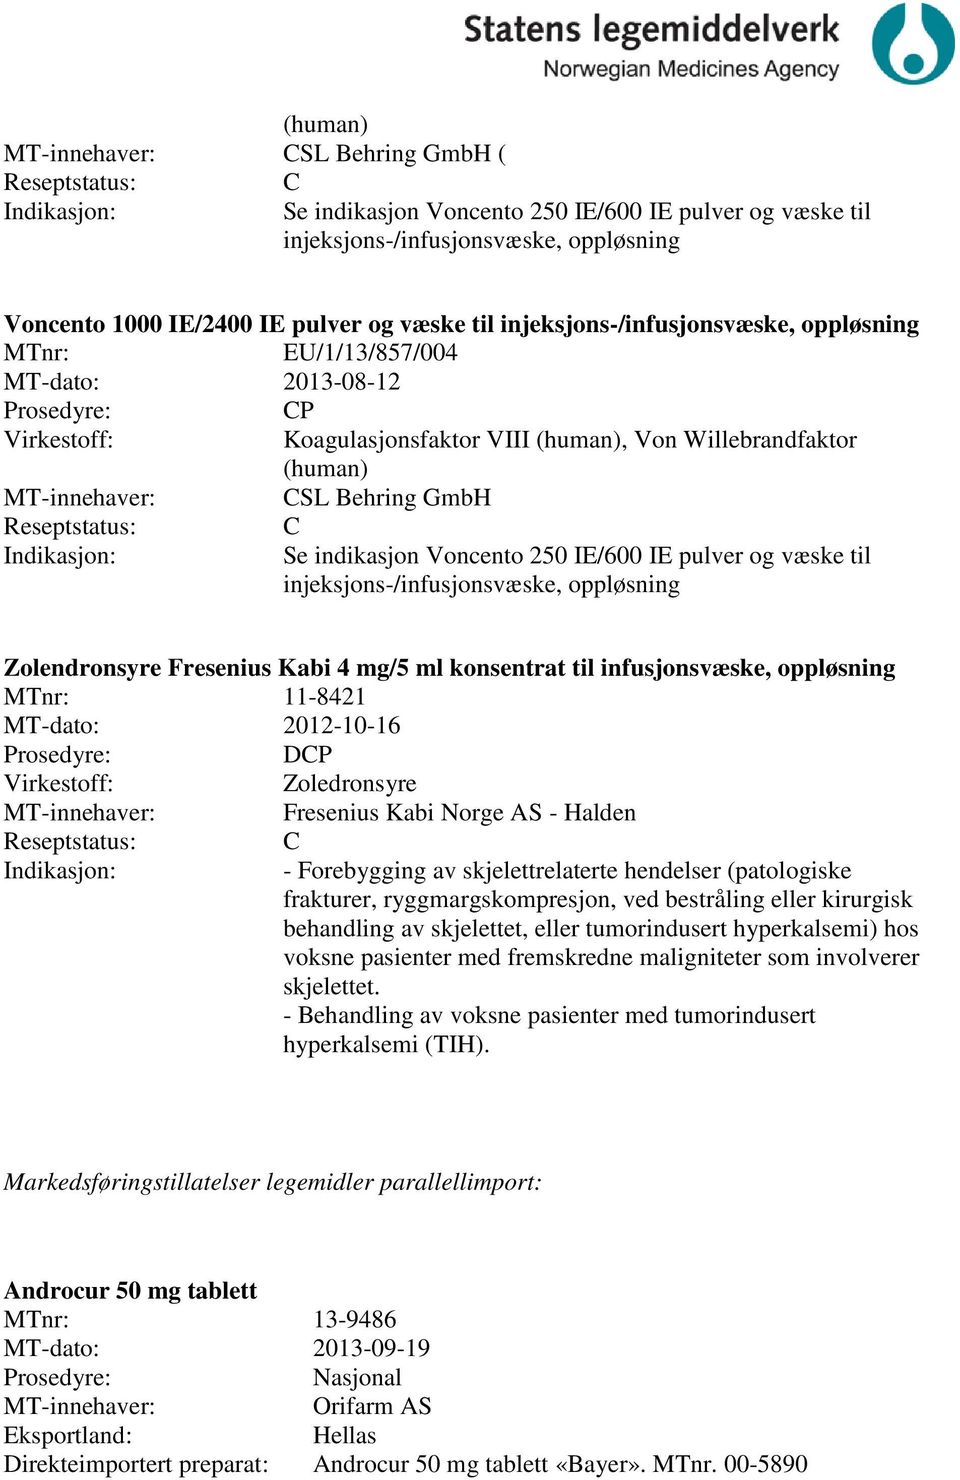 injeksjons-/infusjonsvæske, oppløsning Zolendronsyre Fresenius Kabi 4 mg/5 ml konsentrat til infusjonsvæske, oppløsning 11-8421 MT-dato: 2012-10-16 DP Zoledronsyre Fresenius Kabi Norge AS - Halden -